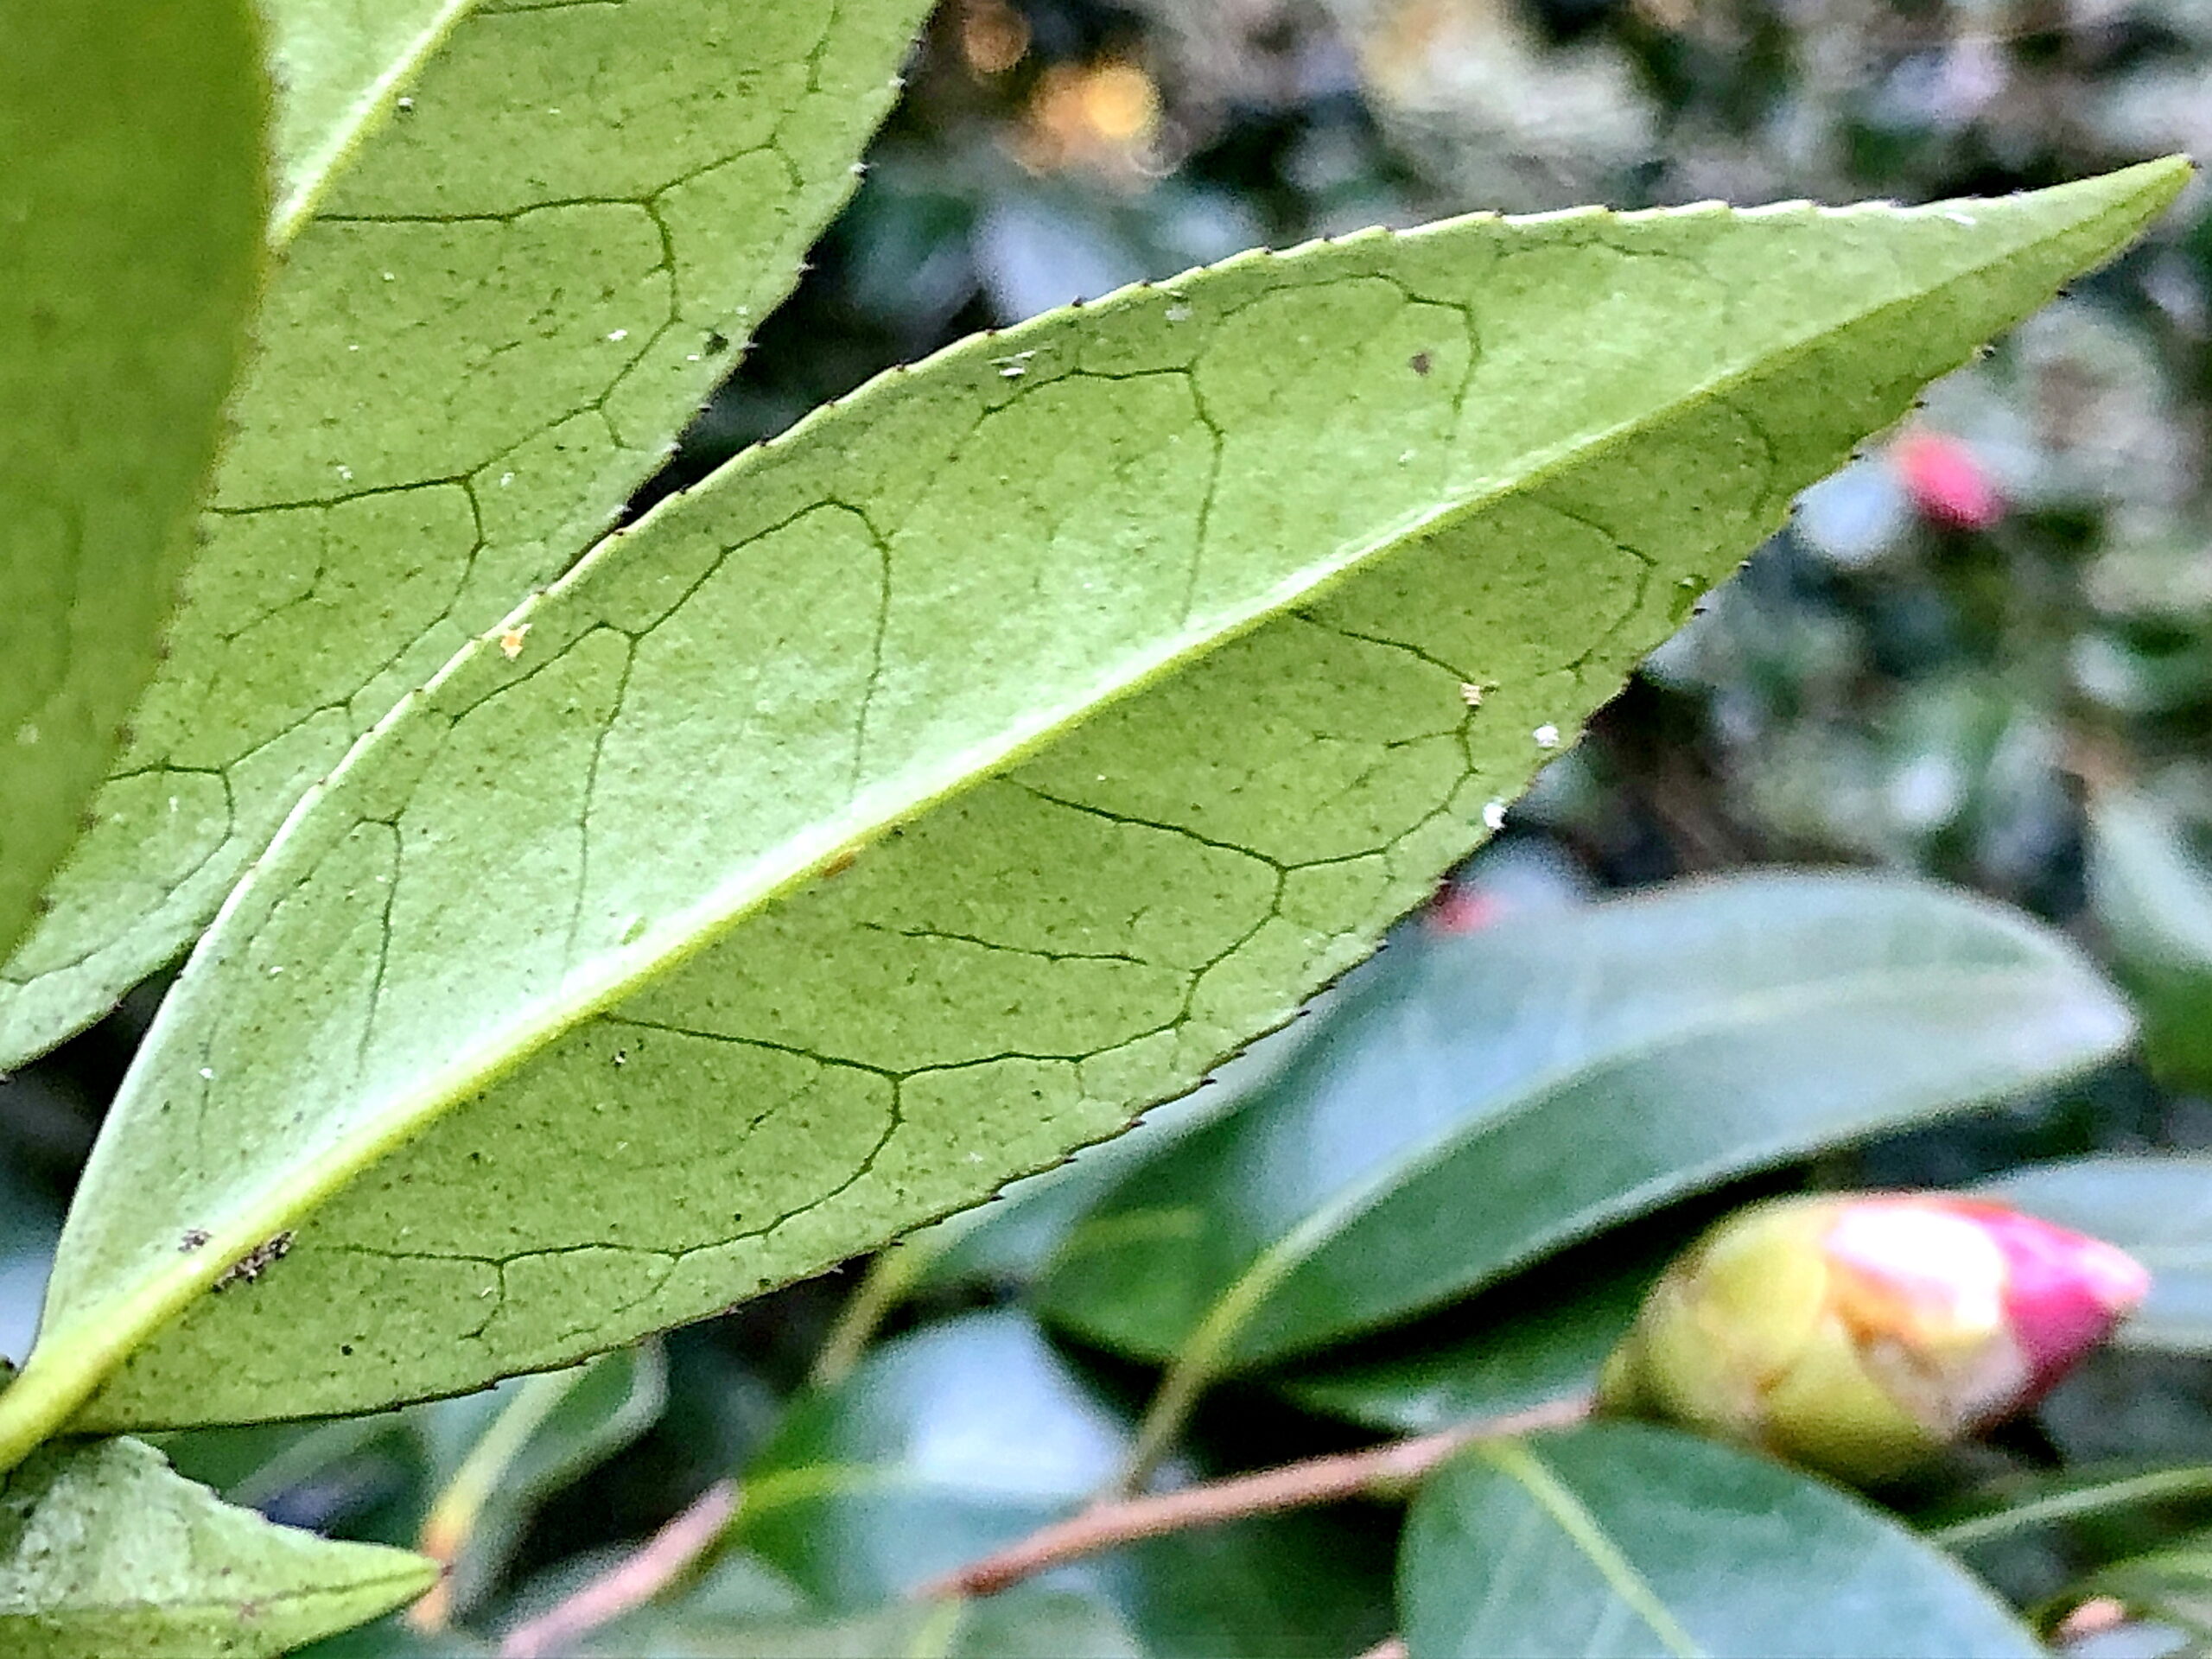 ヤブツバキ 藪椿 シロバナヤブツバキ ツバキ科 ツバキ属 常緑高木 照葉樹 日本固有種 紅色の花 蒴果